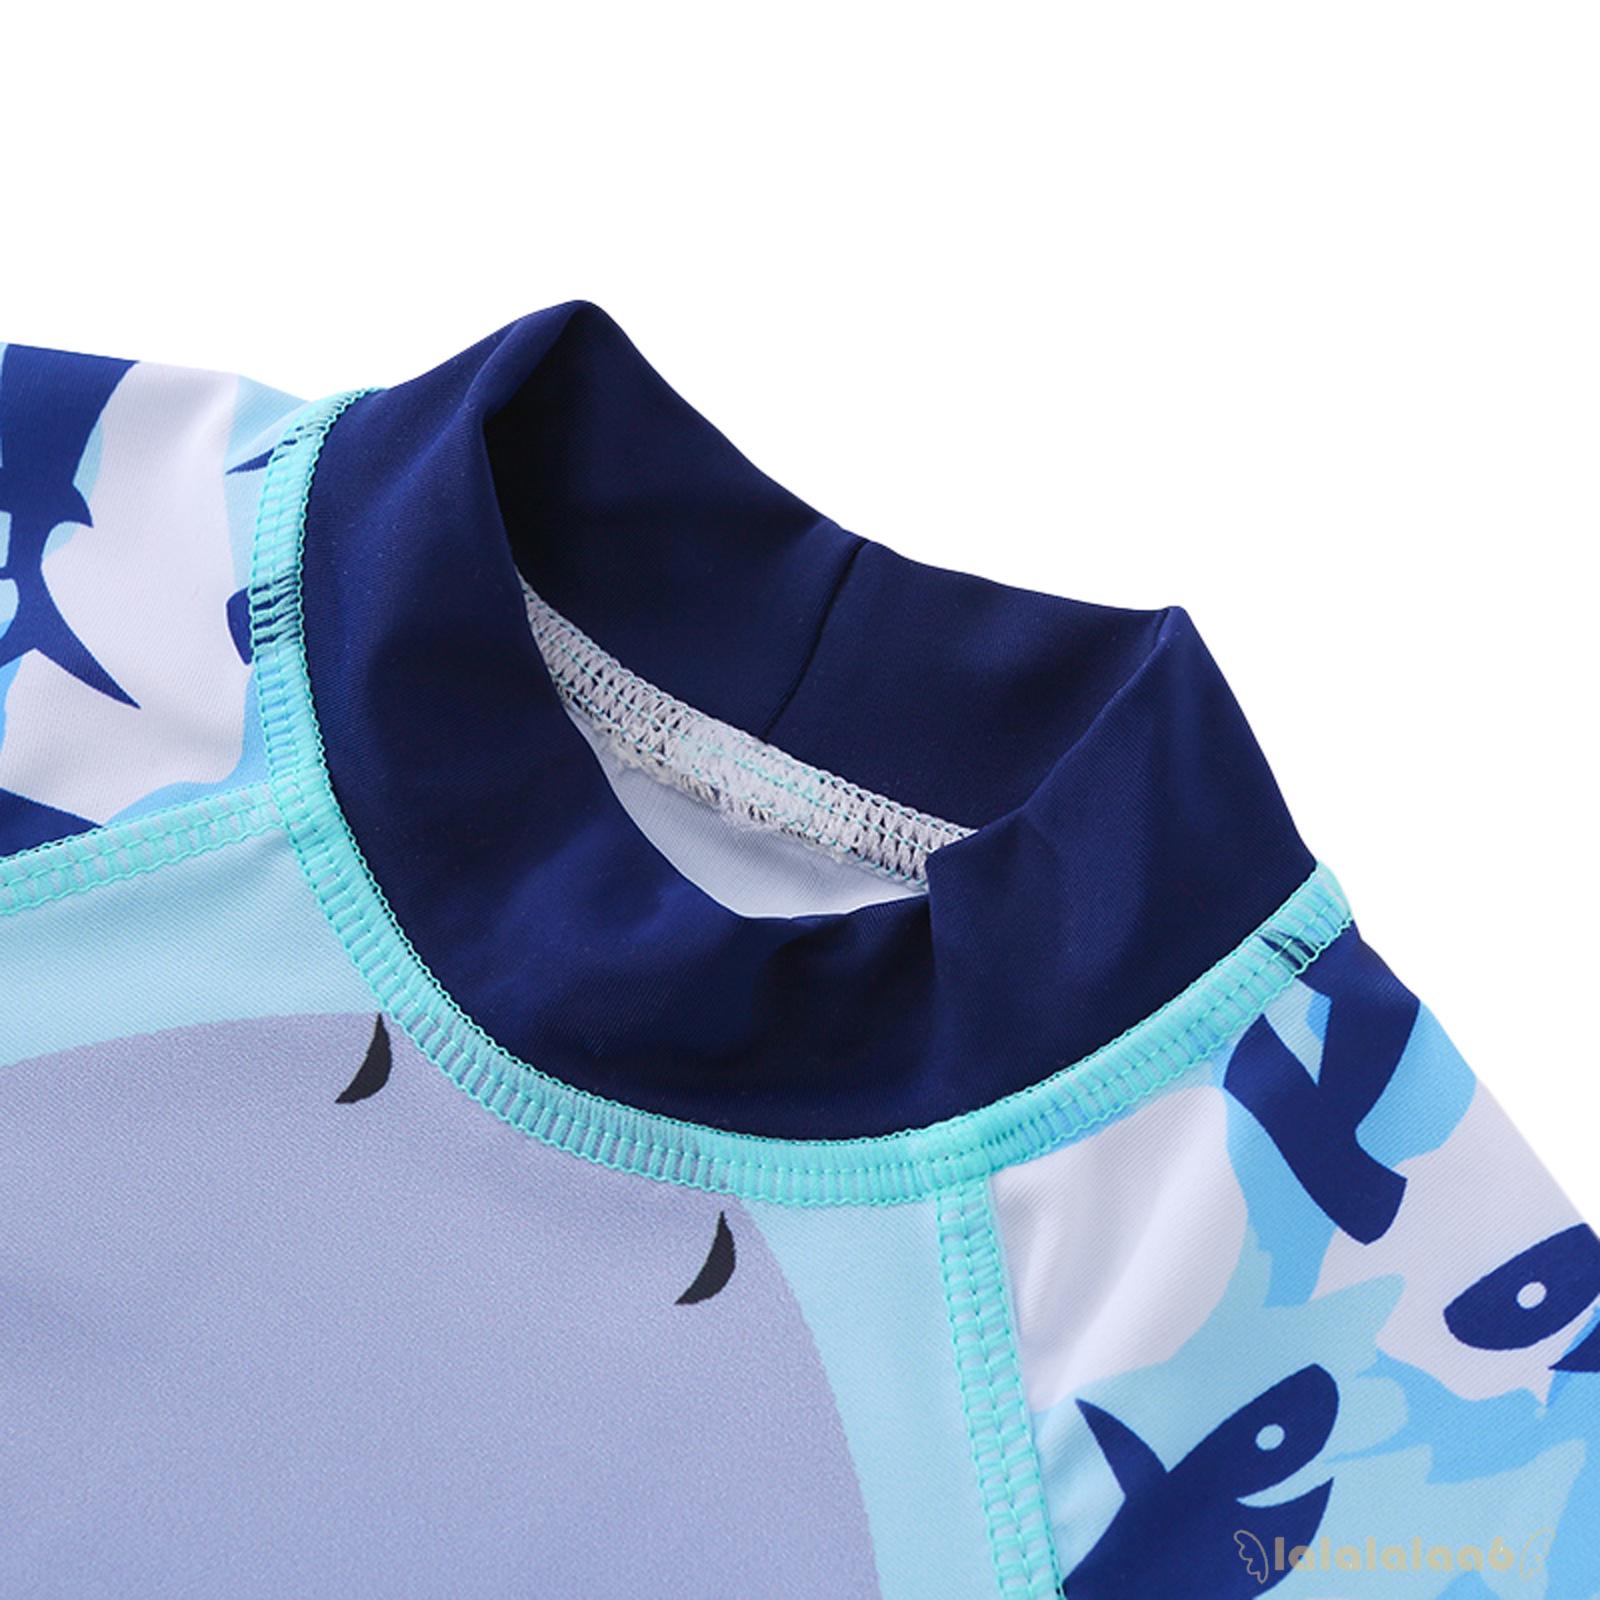 Bộ đồ bơi gồm áo ngắn tay cổ tròn màu xanh dương và quần đùi kèm mũ dành cho bé trai Laa6